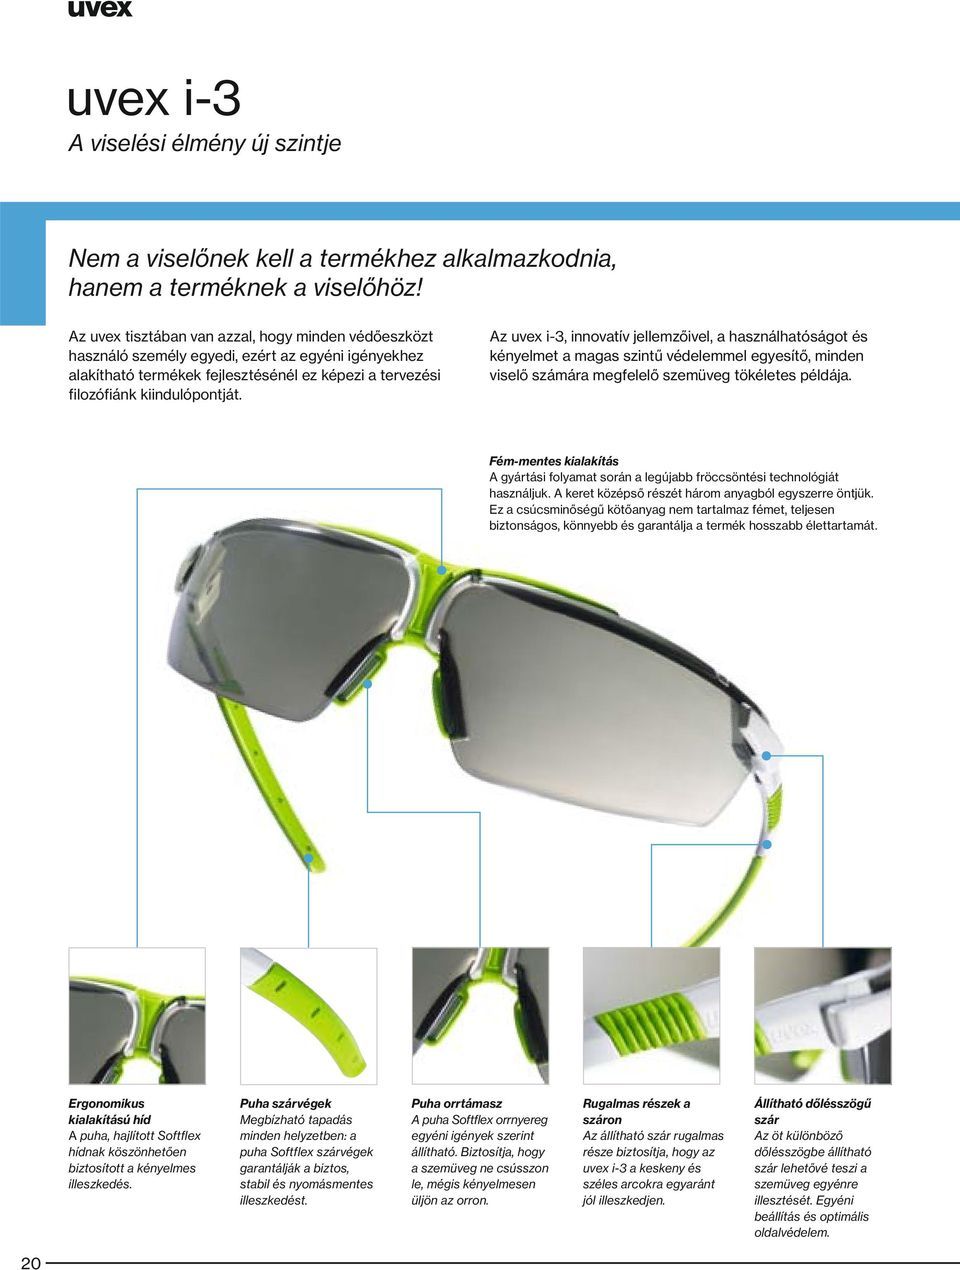 Az uvex i-3, innovatív jellemzőivel, a használhatóságot és kényelmet a magas ű védelemmel egyesítő, minden viselő számára megfelelő szemüveg tökéletes példája.